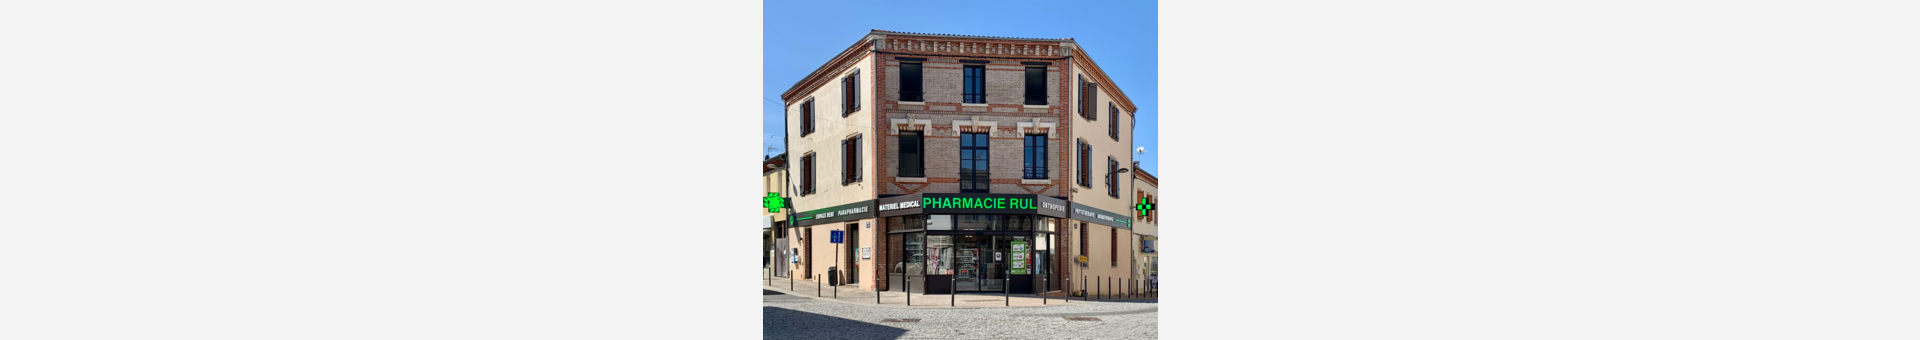 Pharmacie Rul,Saint-Juéry